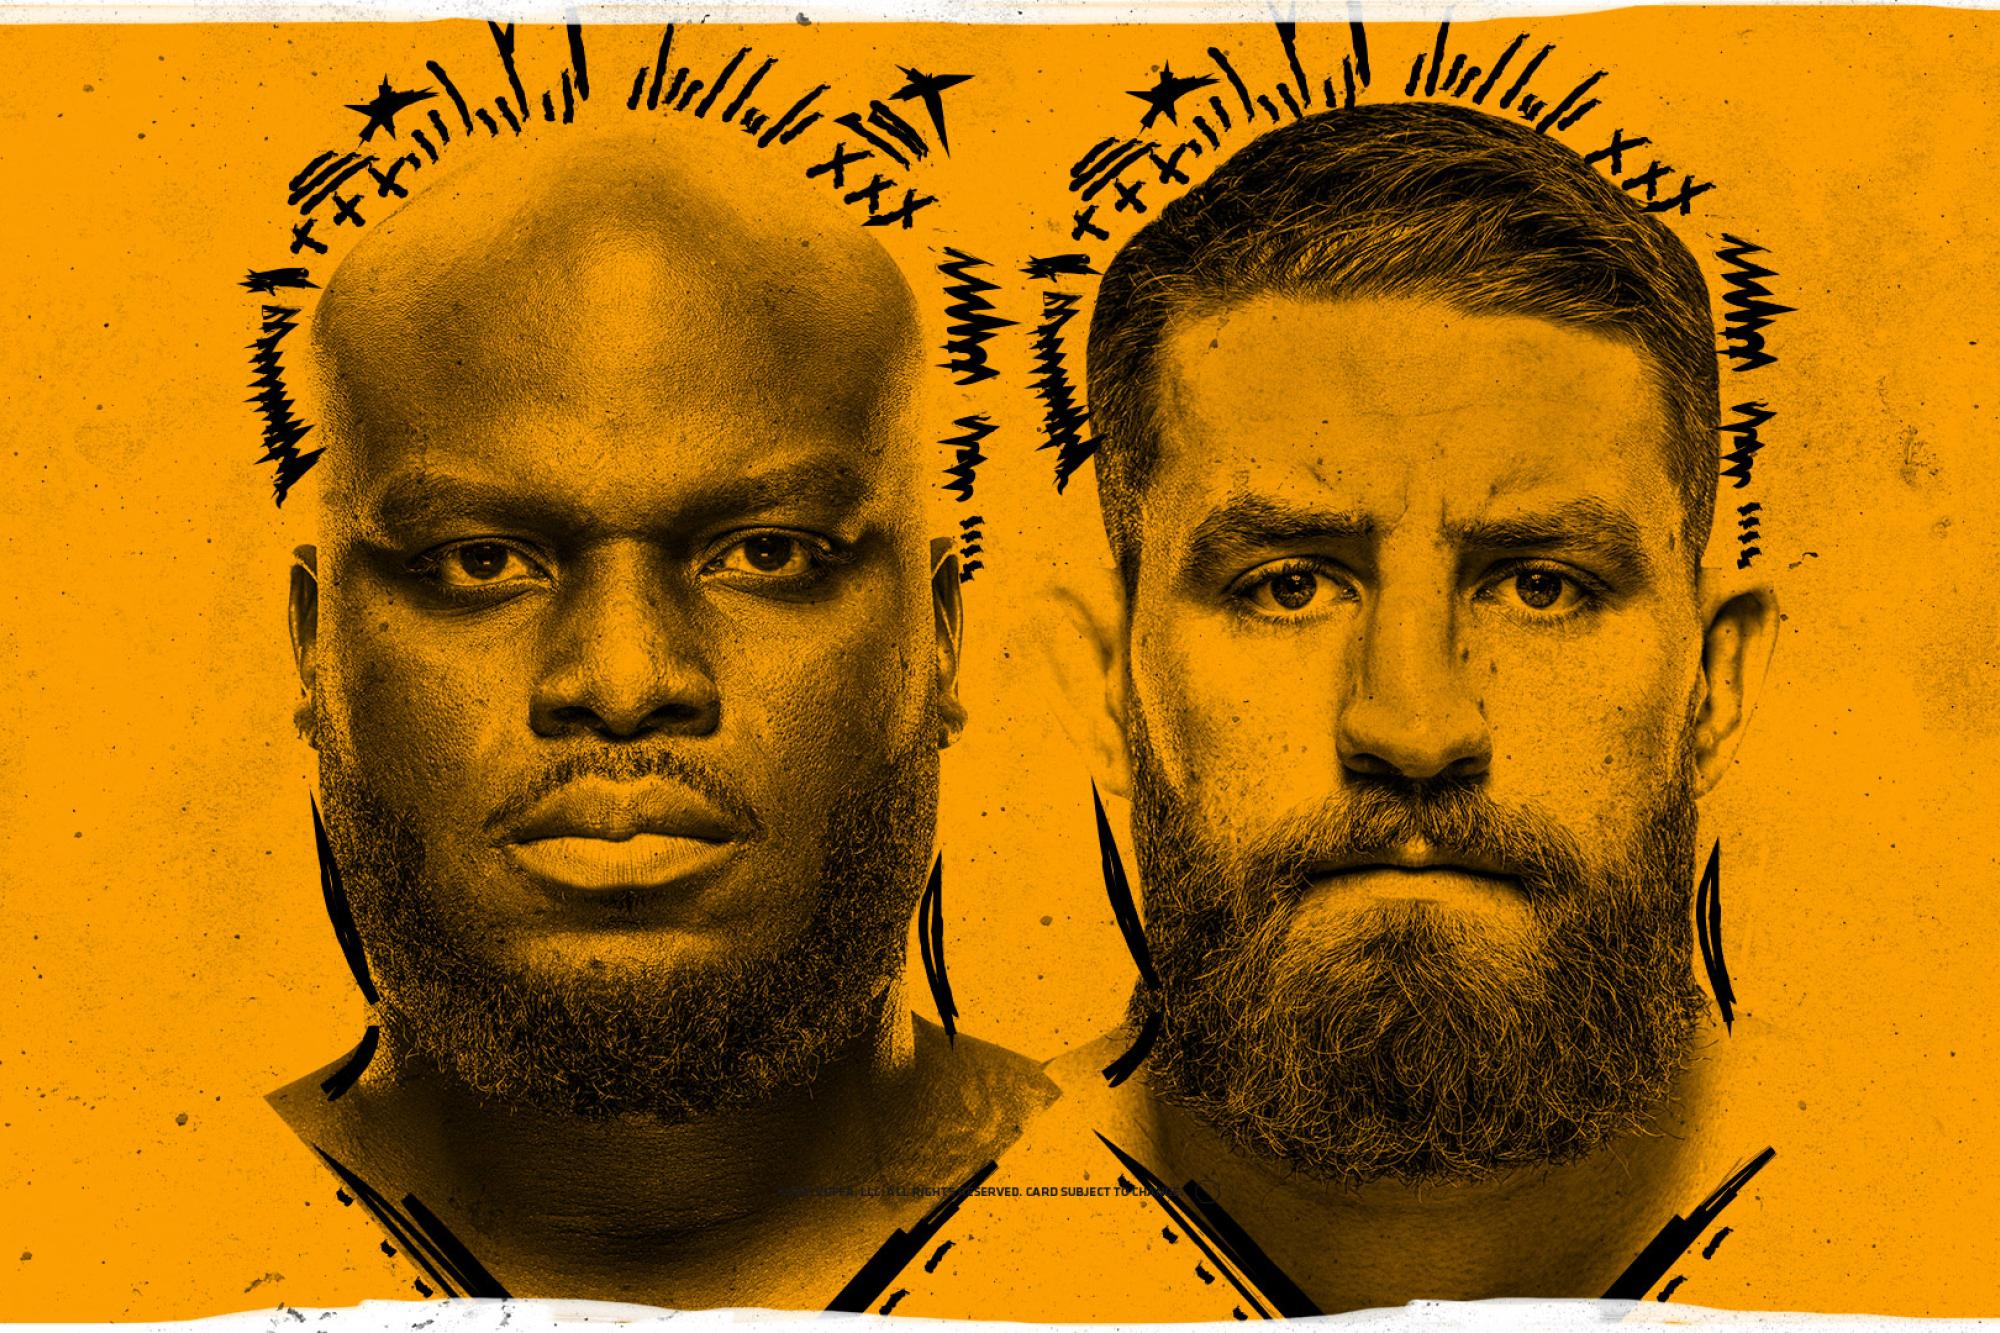 UFC on ESPN+ 57 - Las Vegas - Poster et affiche